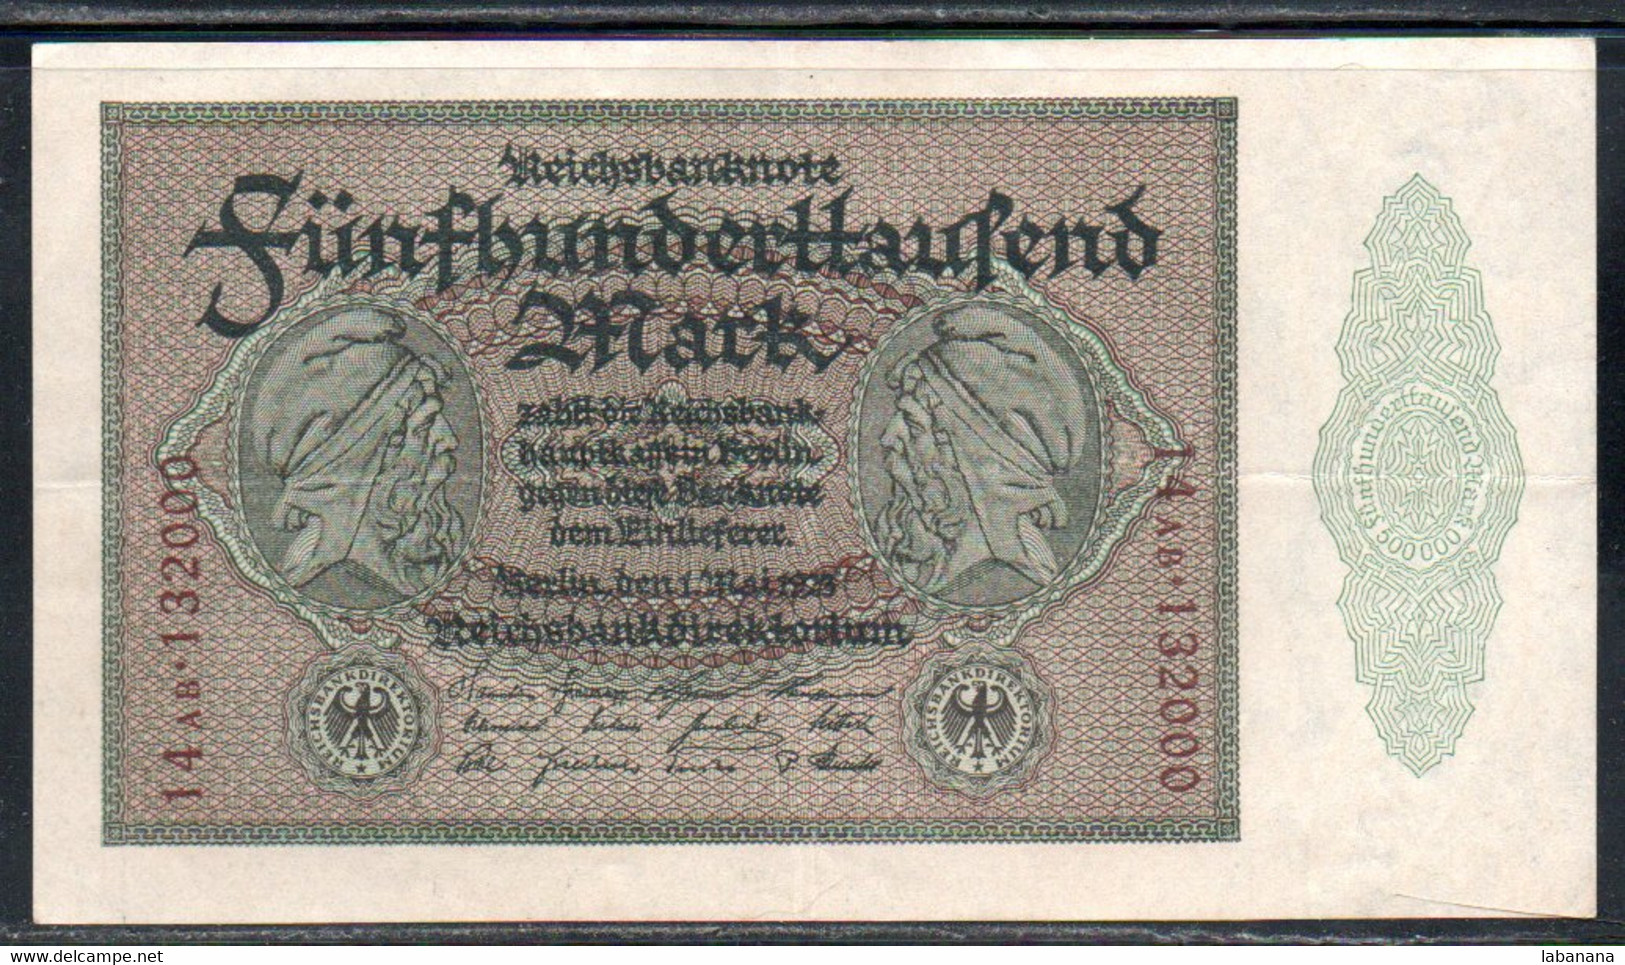 659-Allemagne 500 000m 1923 14AB132 - 500.000 Mark